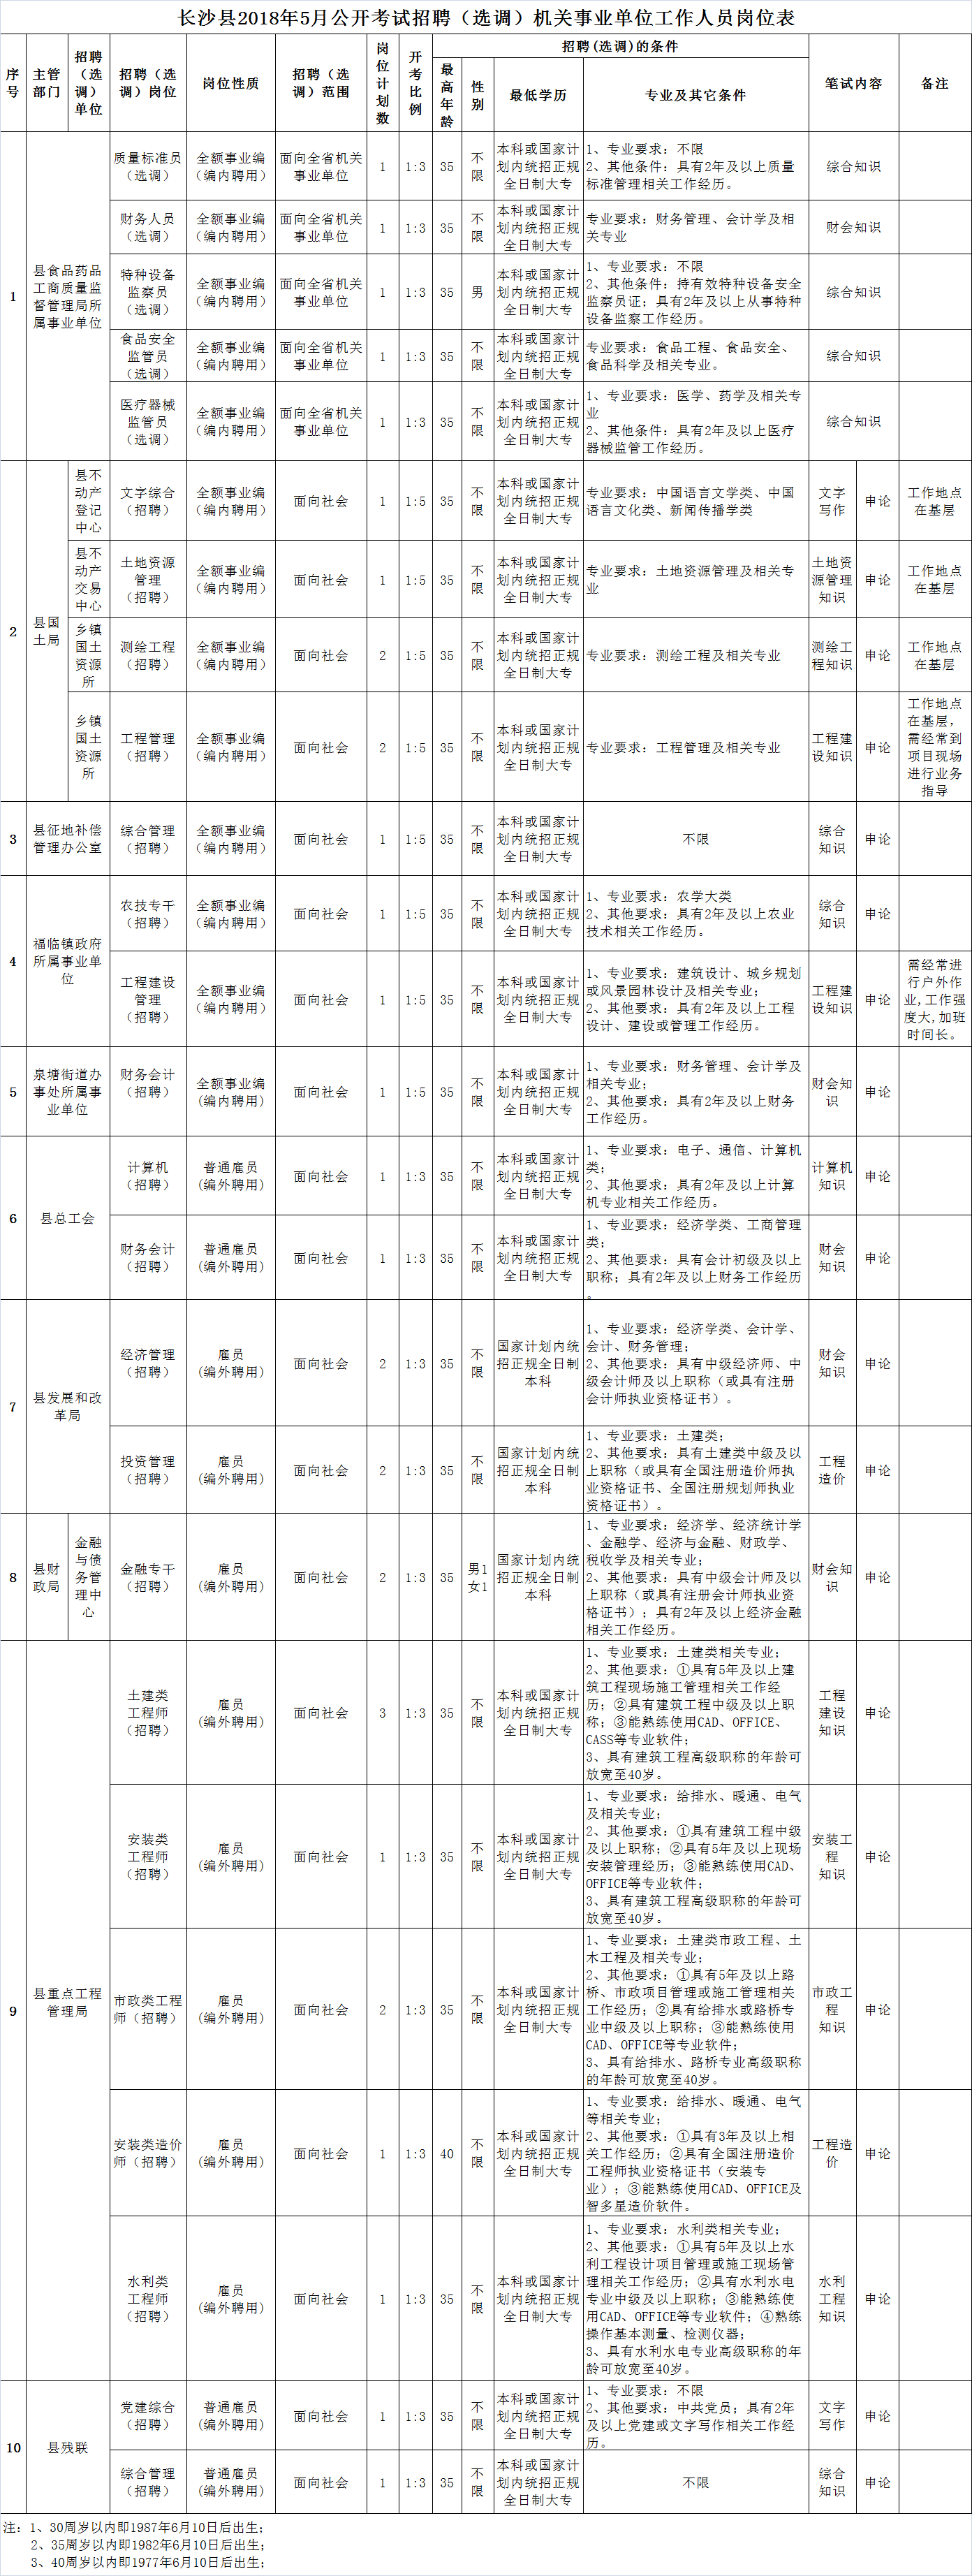 1.长沙县2018年5月公开考试招聘(选调)机关事业单位工作人员岗位表.png